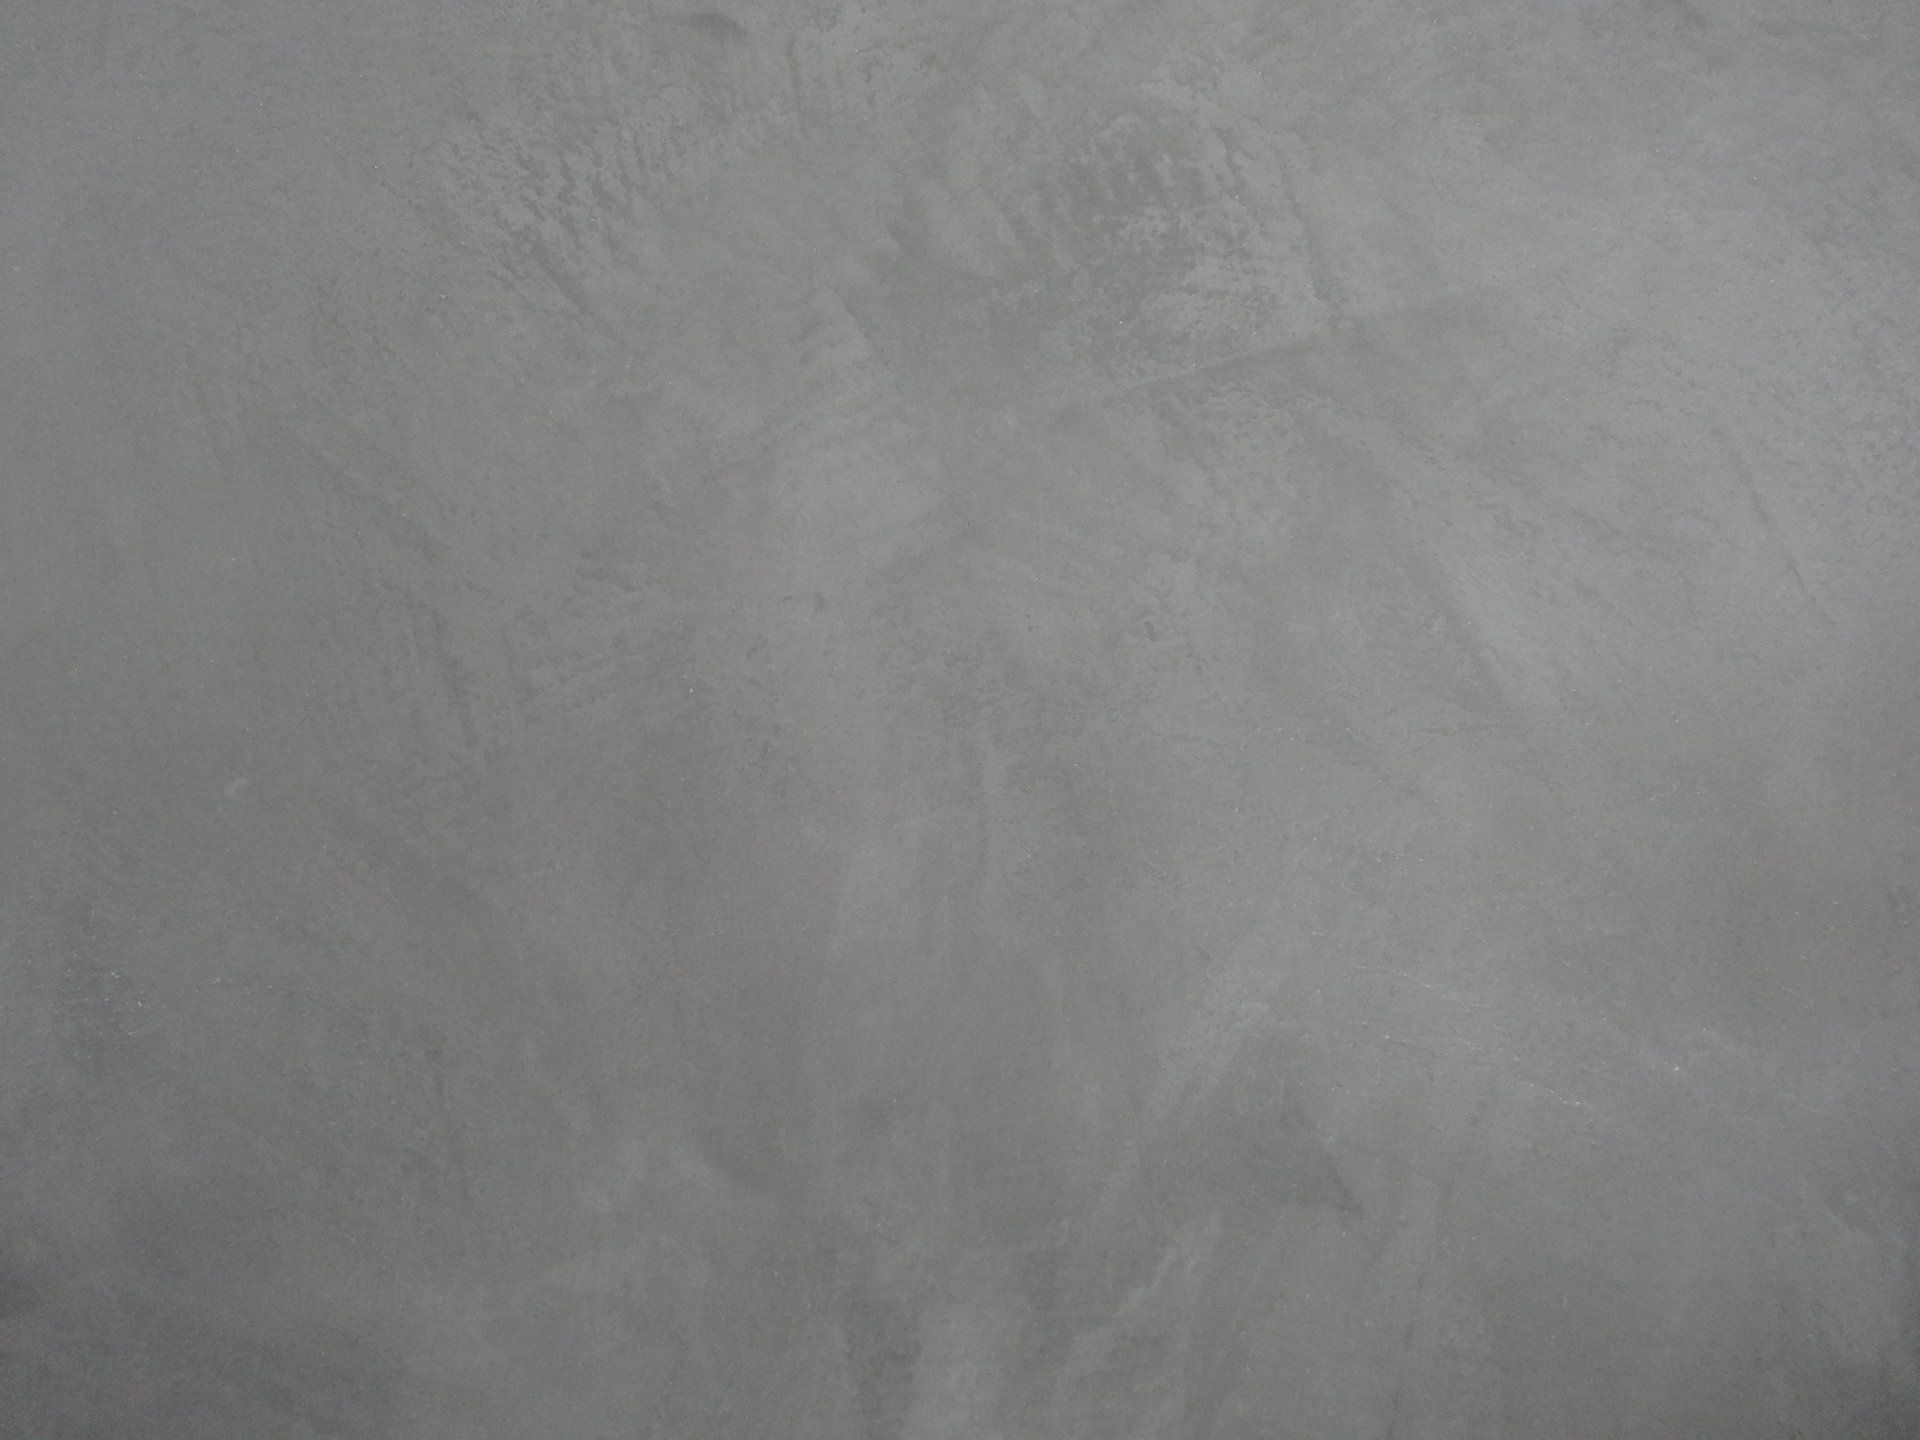 Hintergrund grau marmoriert, Hintergrund für Kundenzitate, Online - Badausstellung von Geiger Badplanung, Sanitär in Göppingen